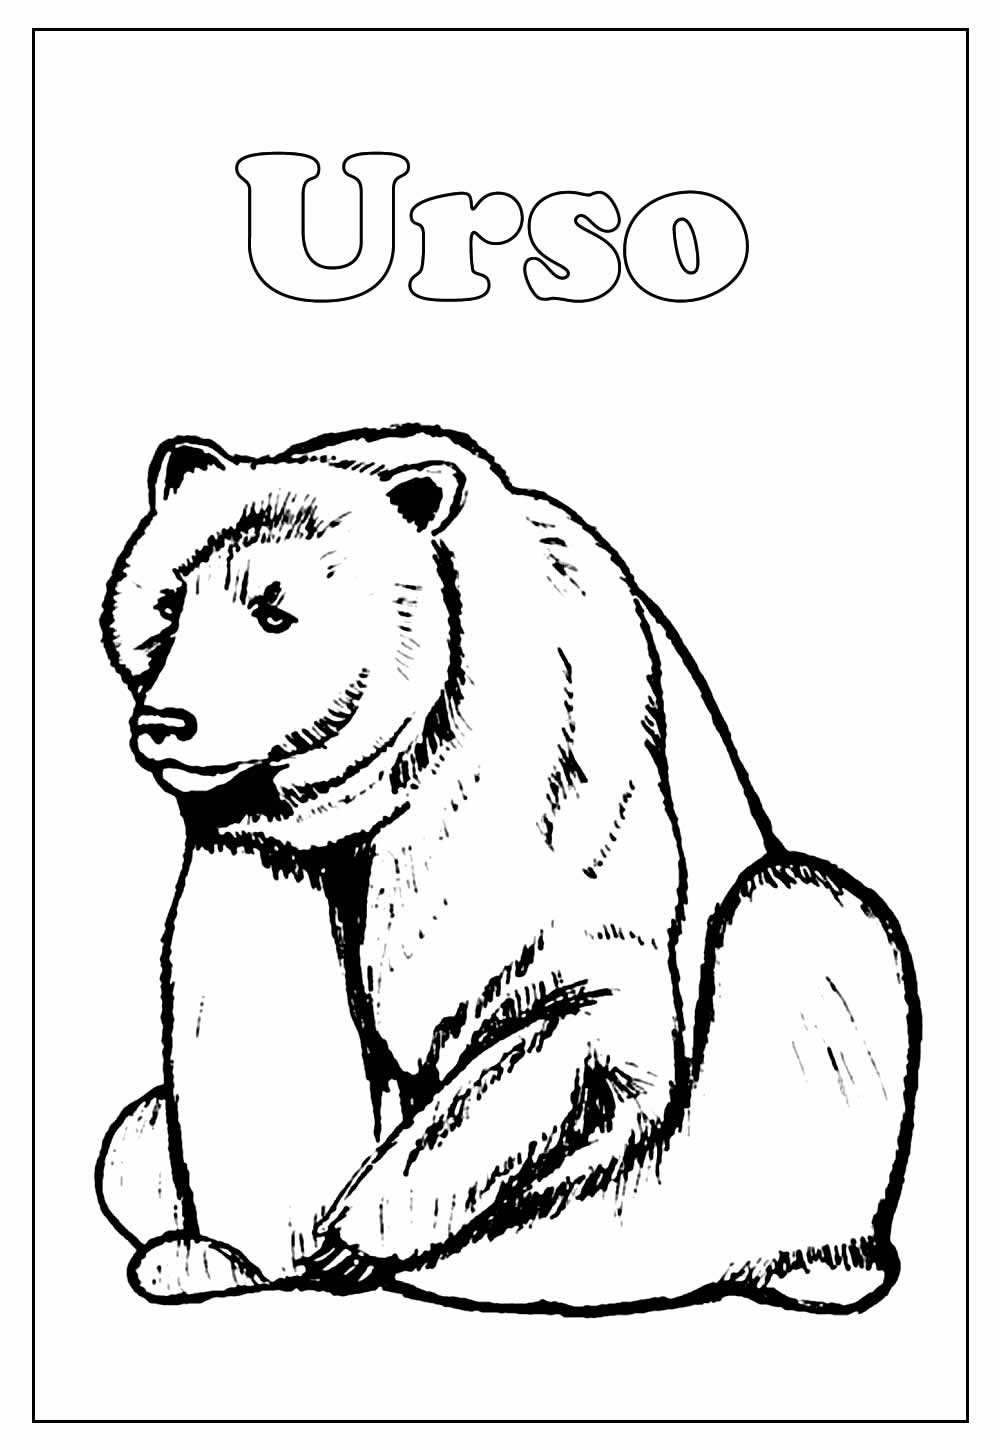 Desenho de Urso para pintar